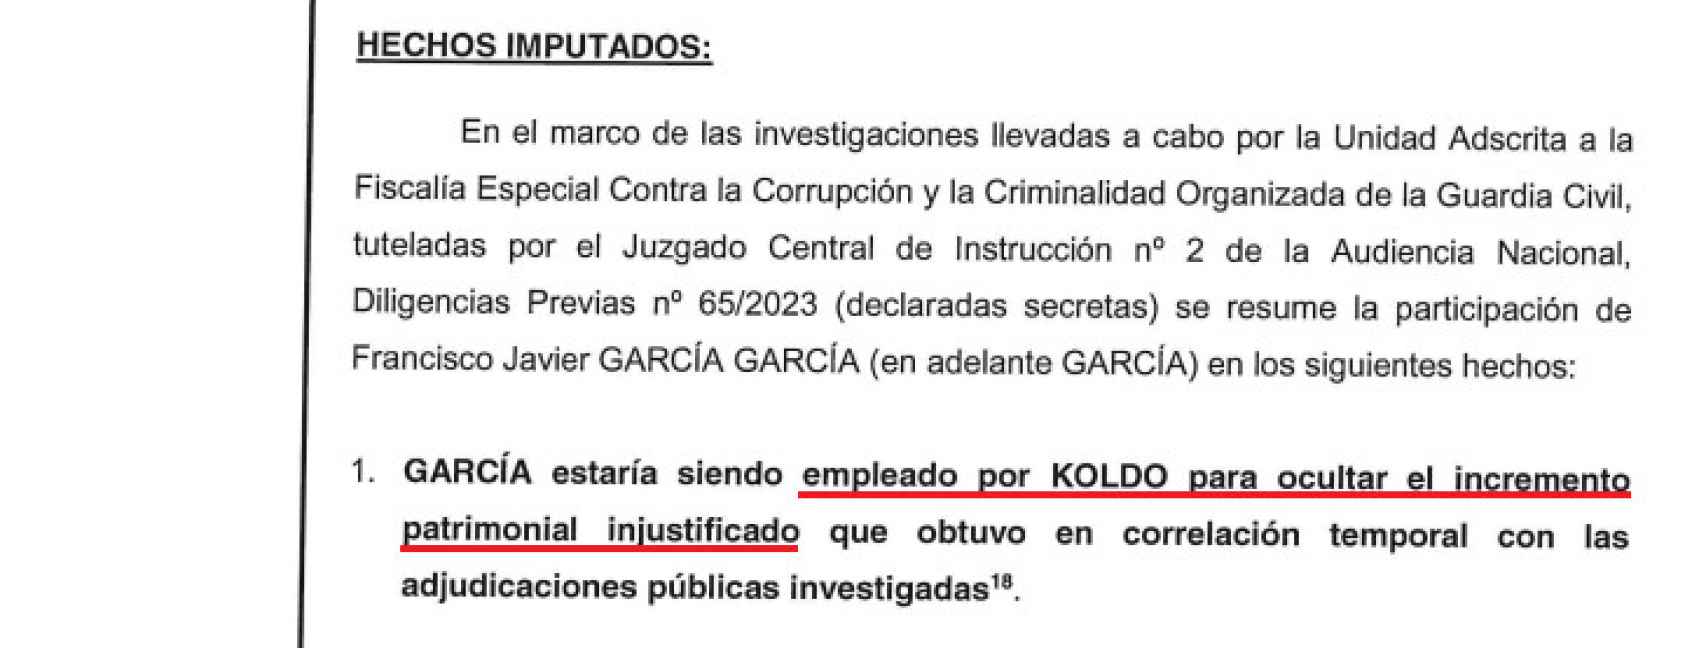 Informe de la UCO que atribuye a García García el rol de supuesto testaferro de Koldo.